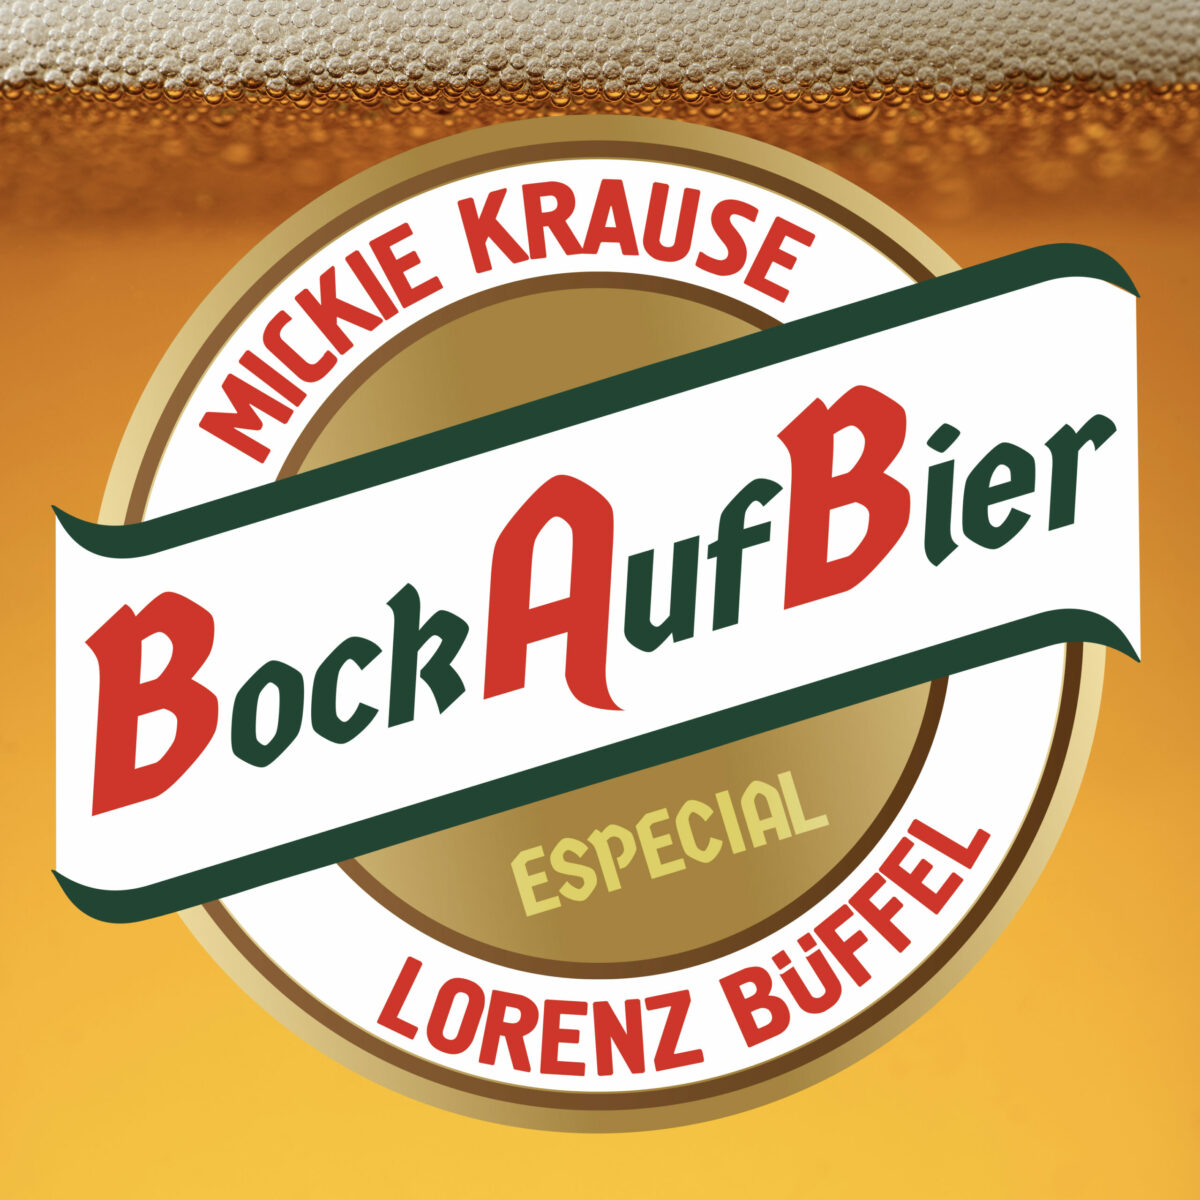 Duett der Superlative: „Bock auf Bier“ von Mickie Krause & Lorenz Büffel